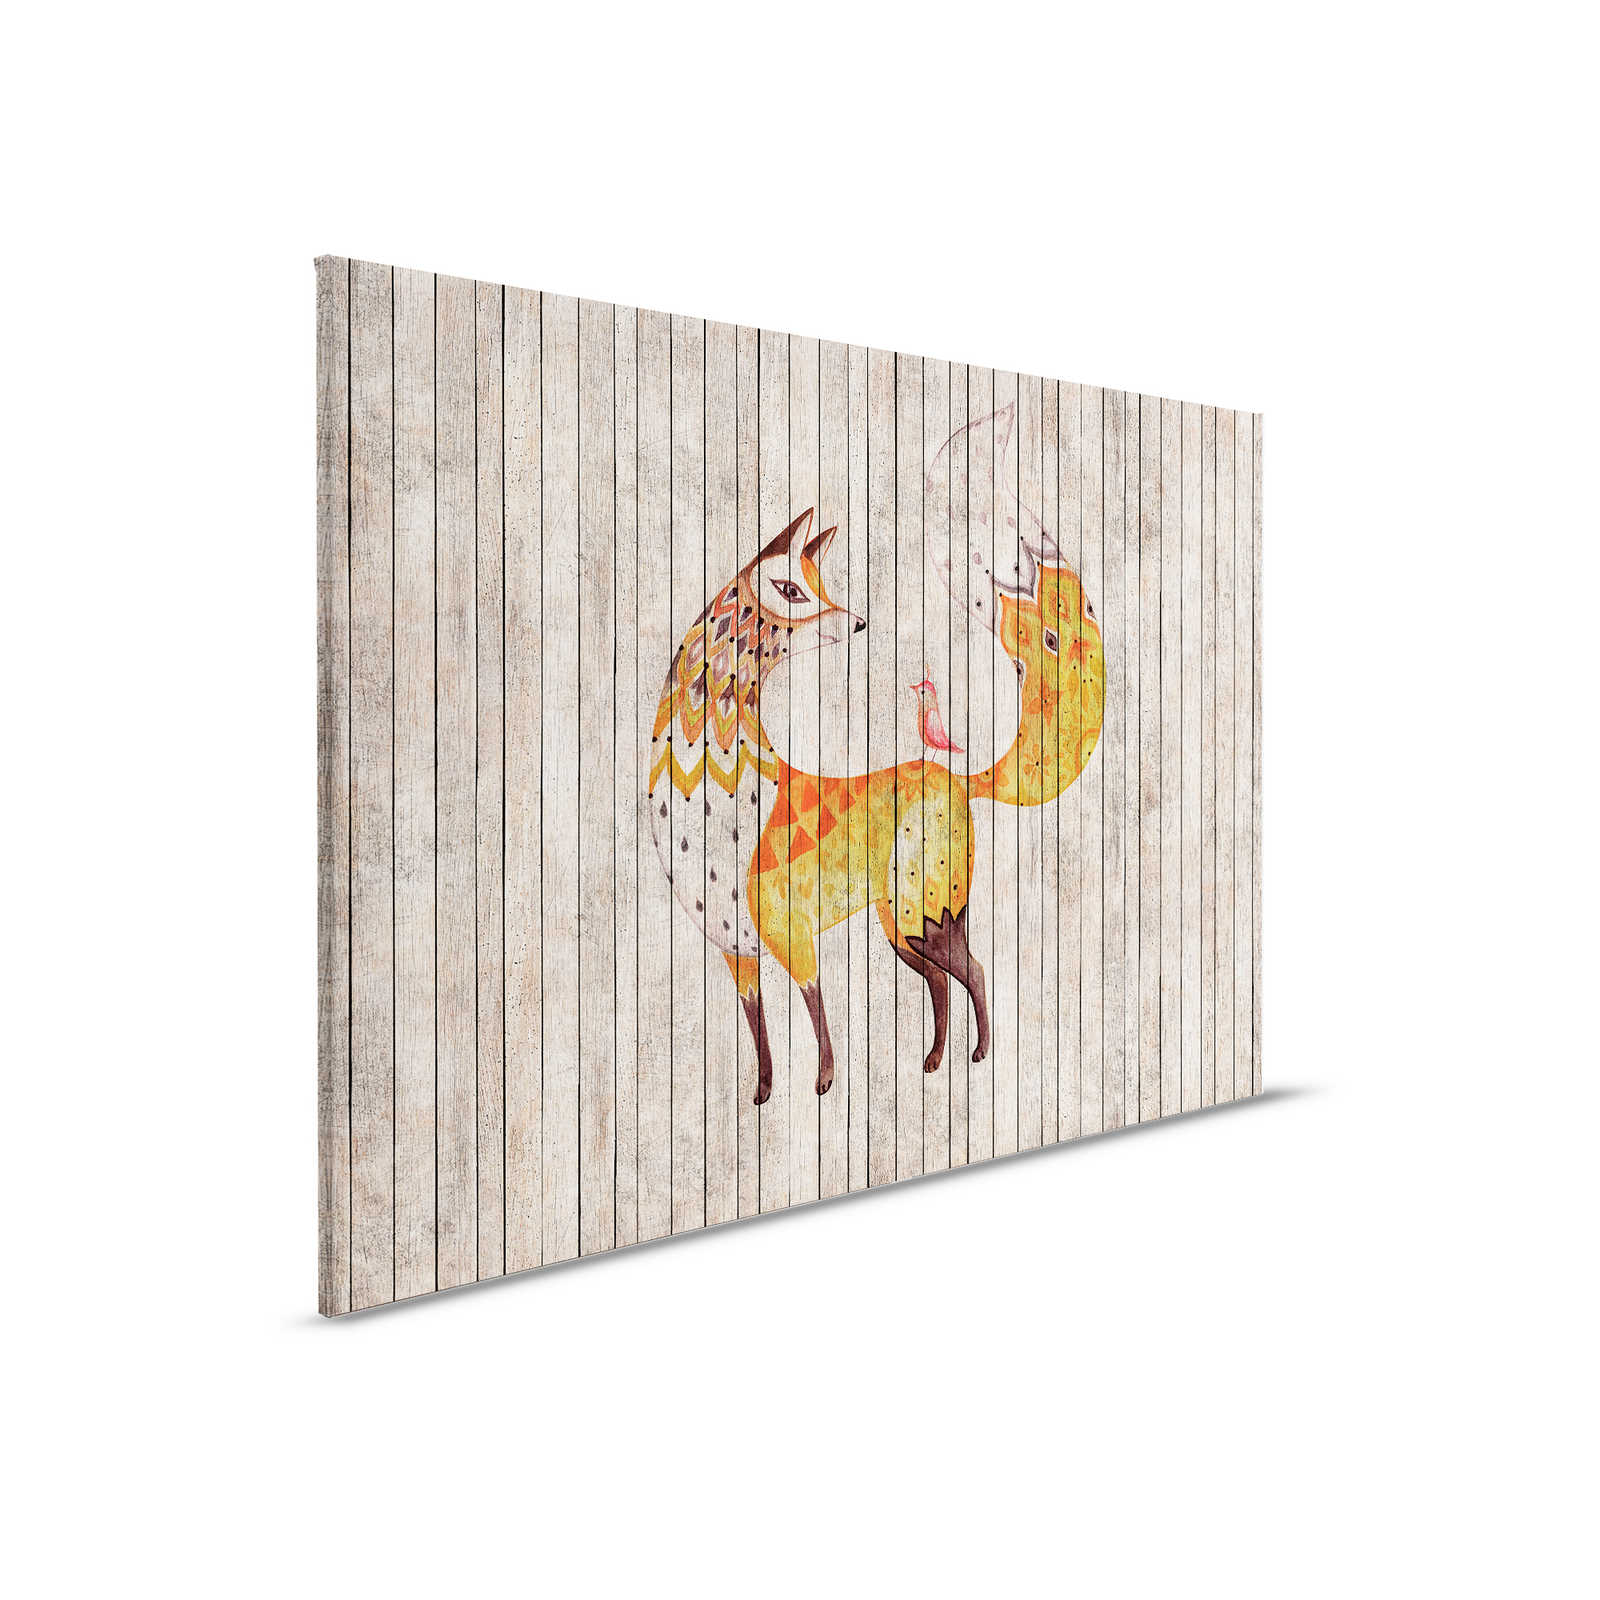 Cuento de hadas 2 - Zorro y pájaro sobre lienzo con aspecto de madera - 0,90 m x 0,60 m
